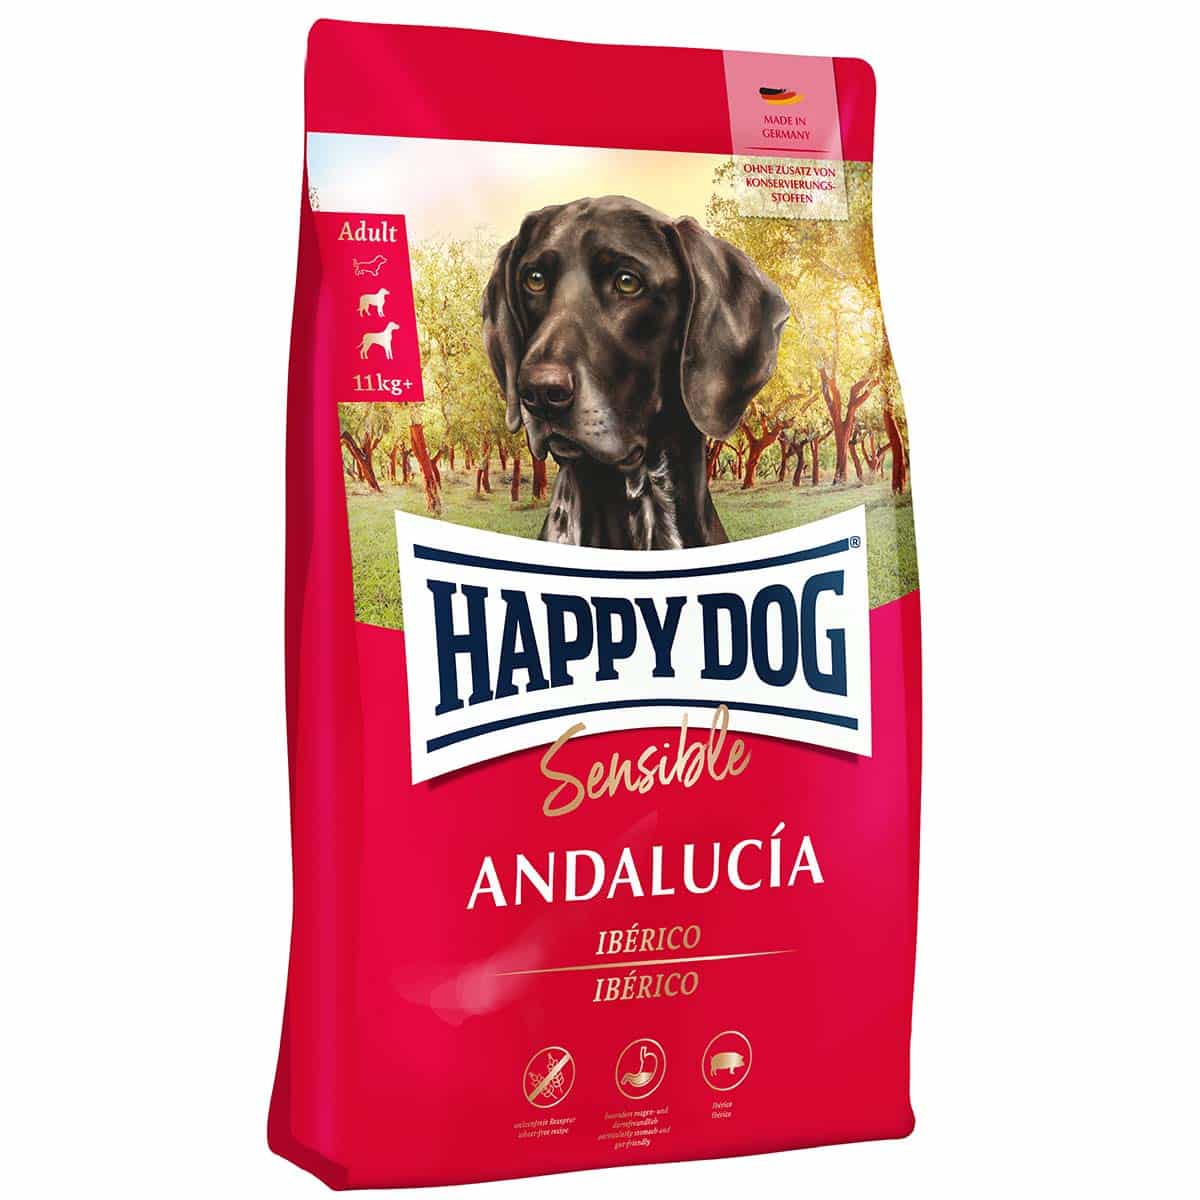 Happy Dog Supreme Sensible Andalucía 11kg